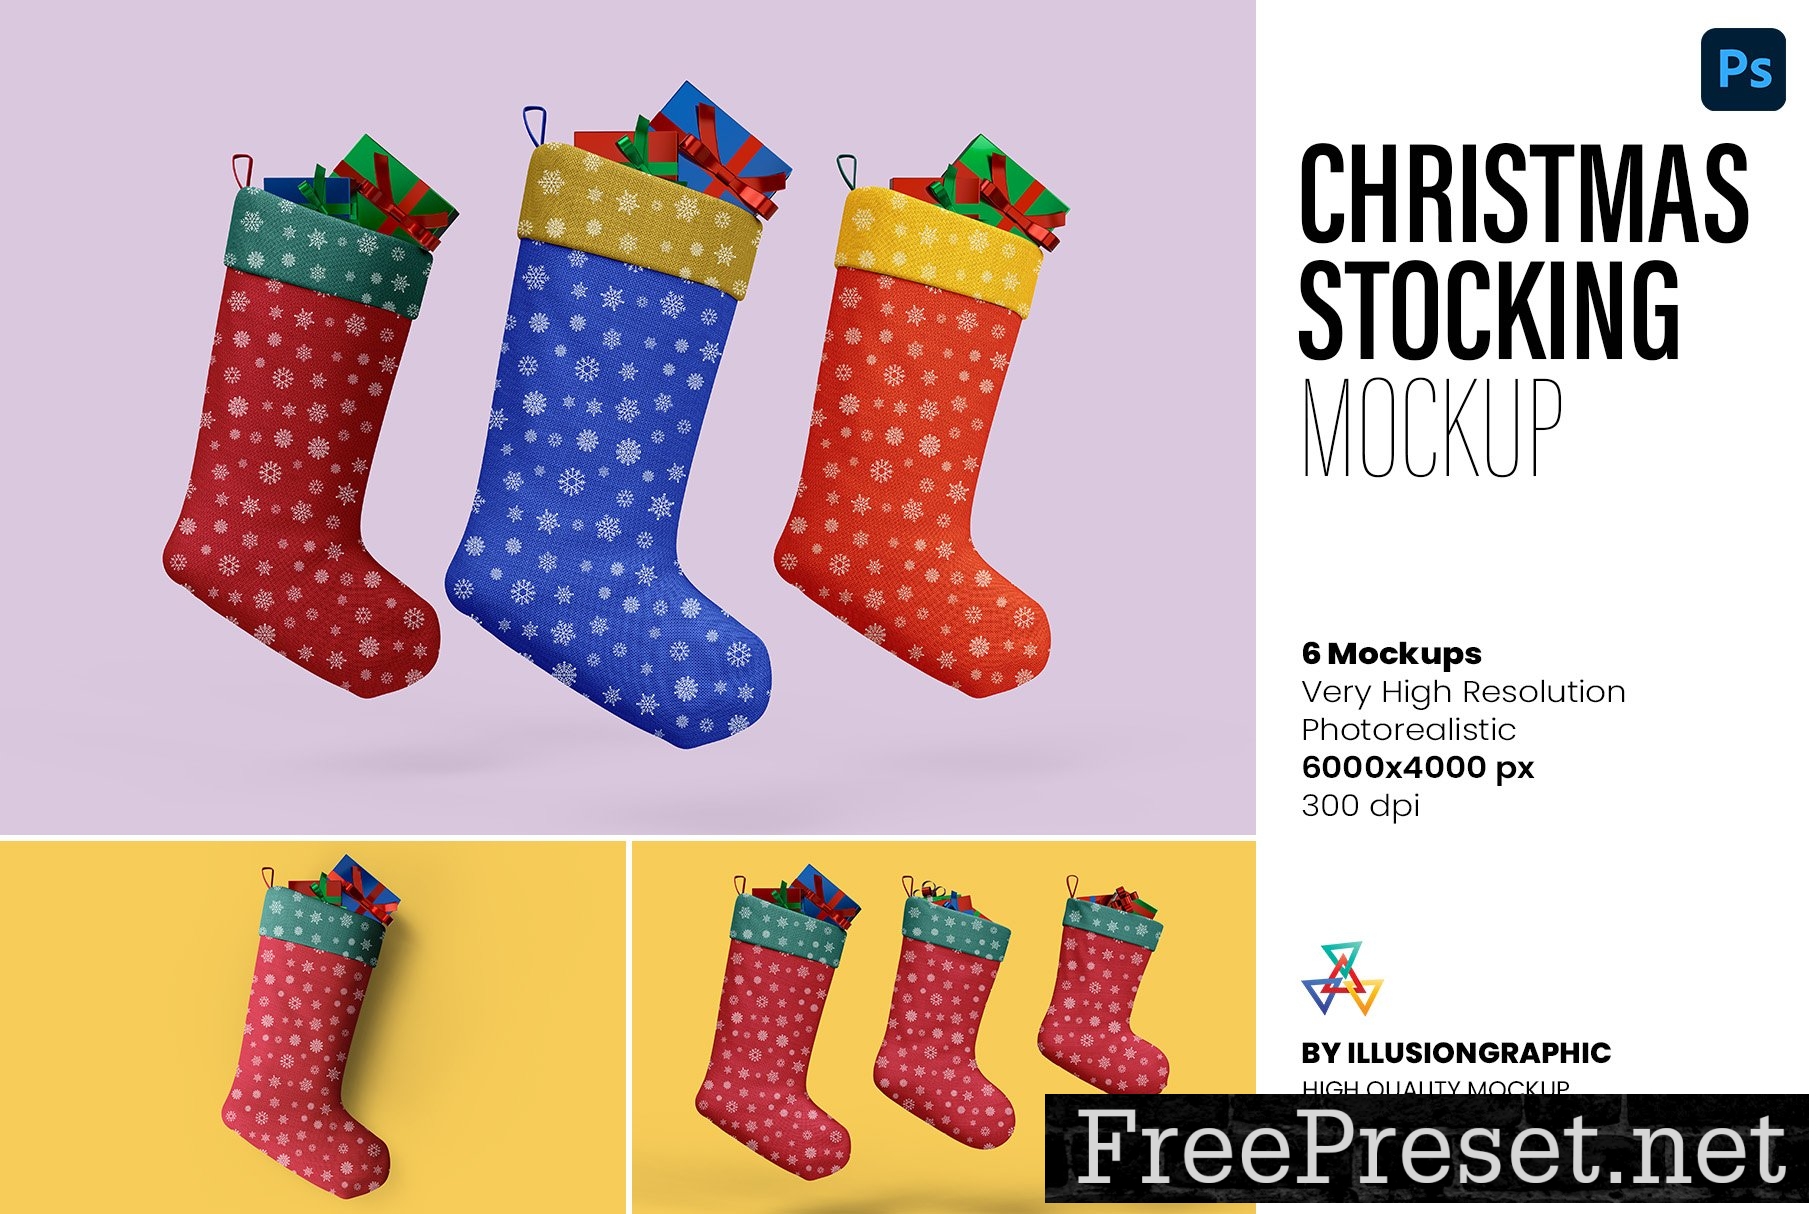 Christmas Stocking Mockup - 6 Views 10321643